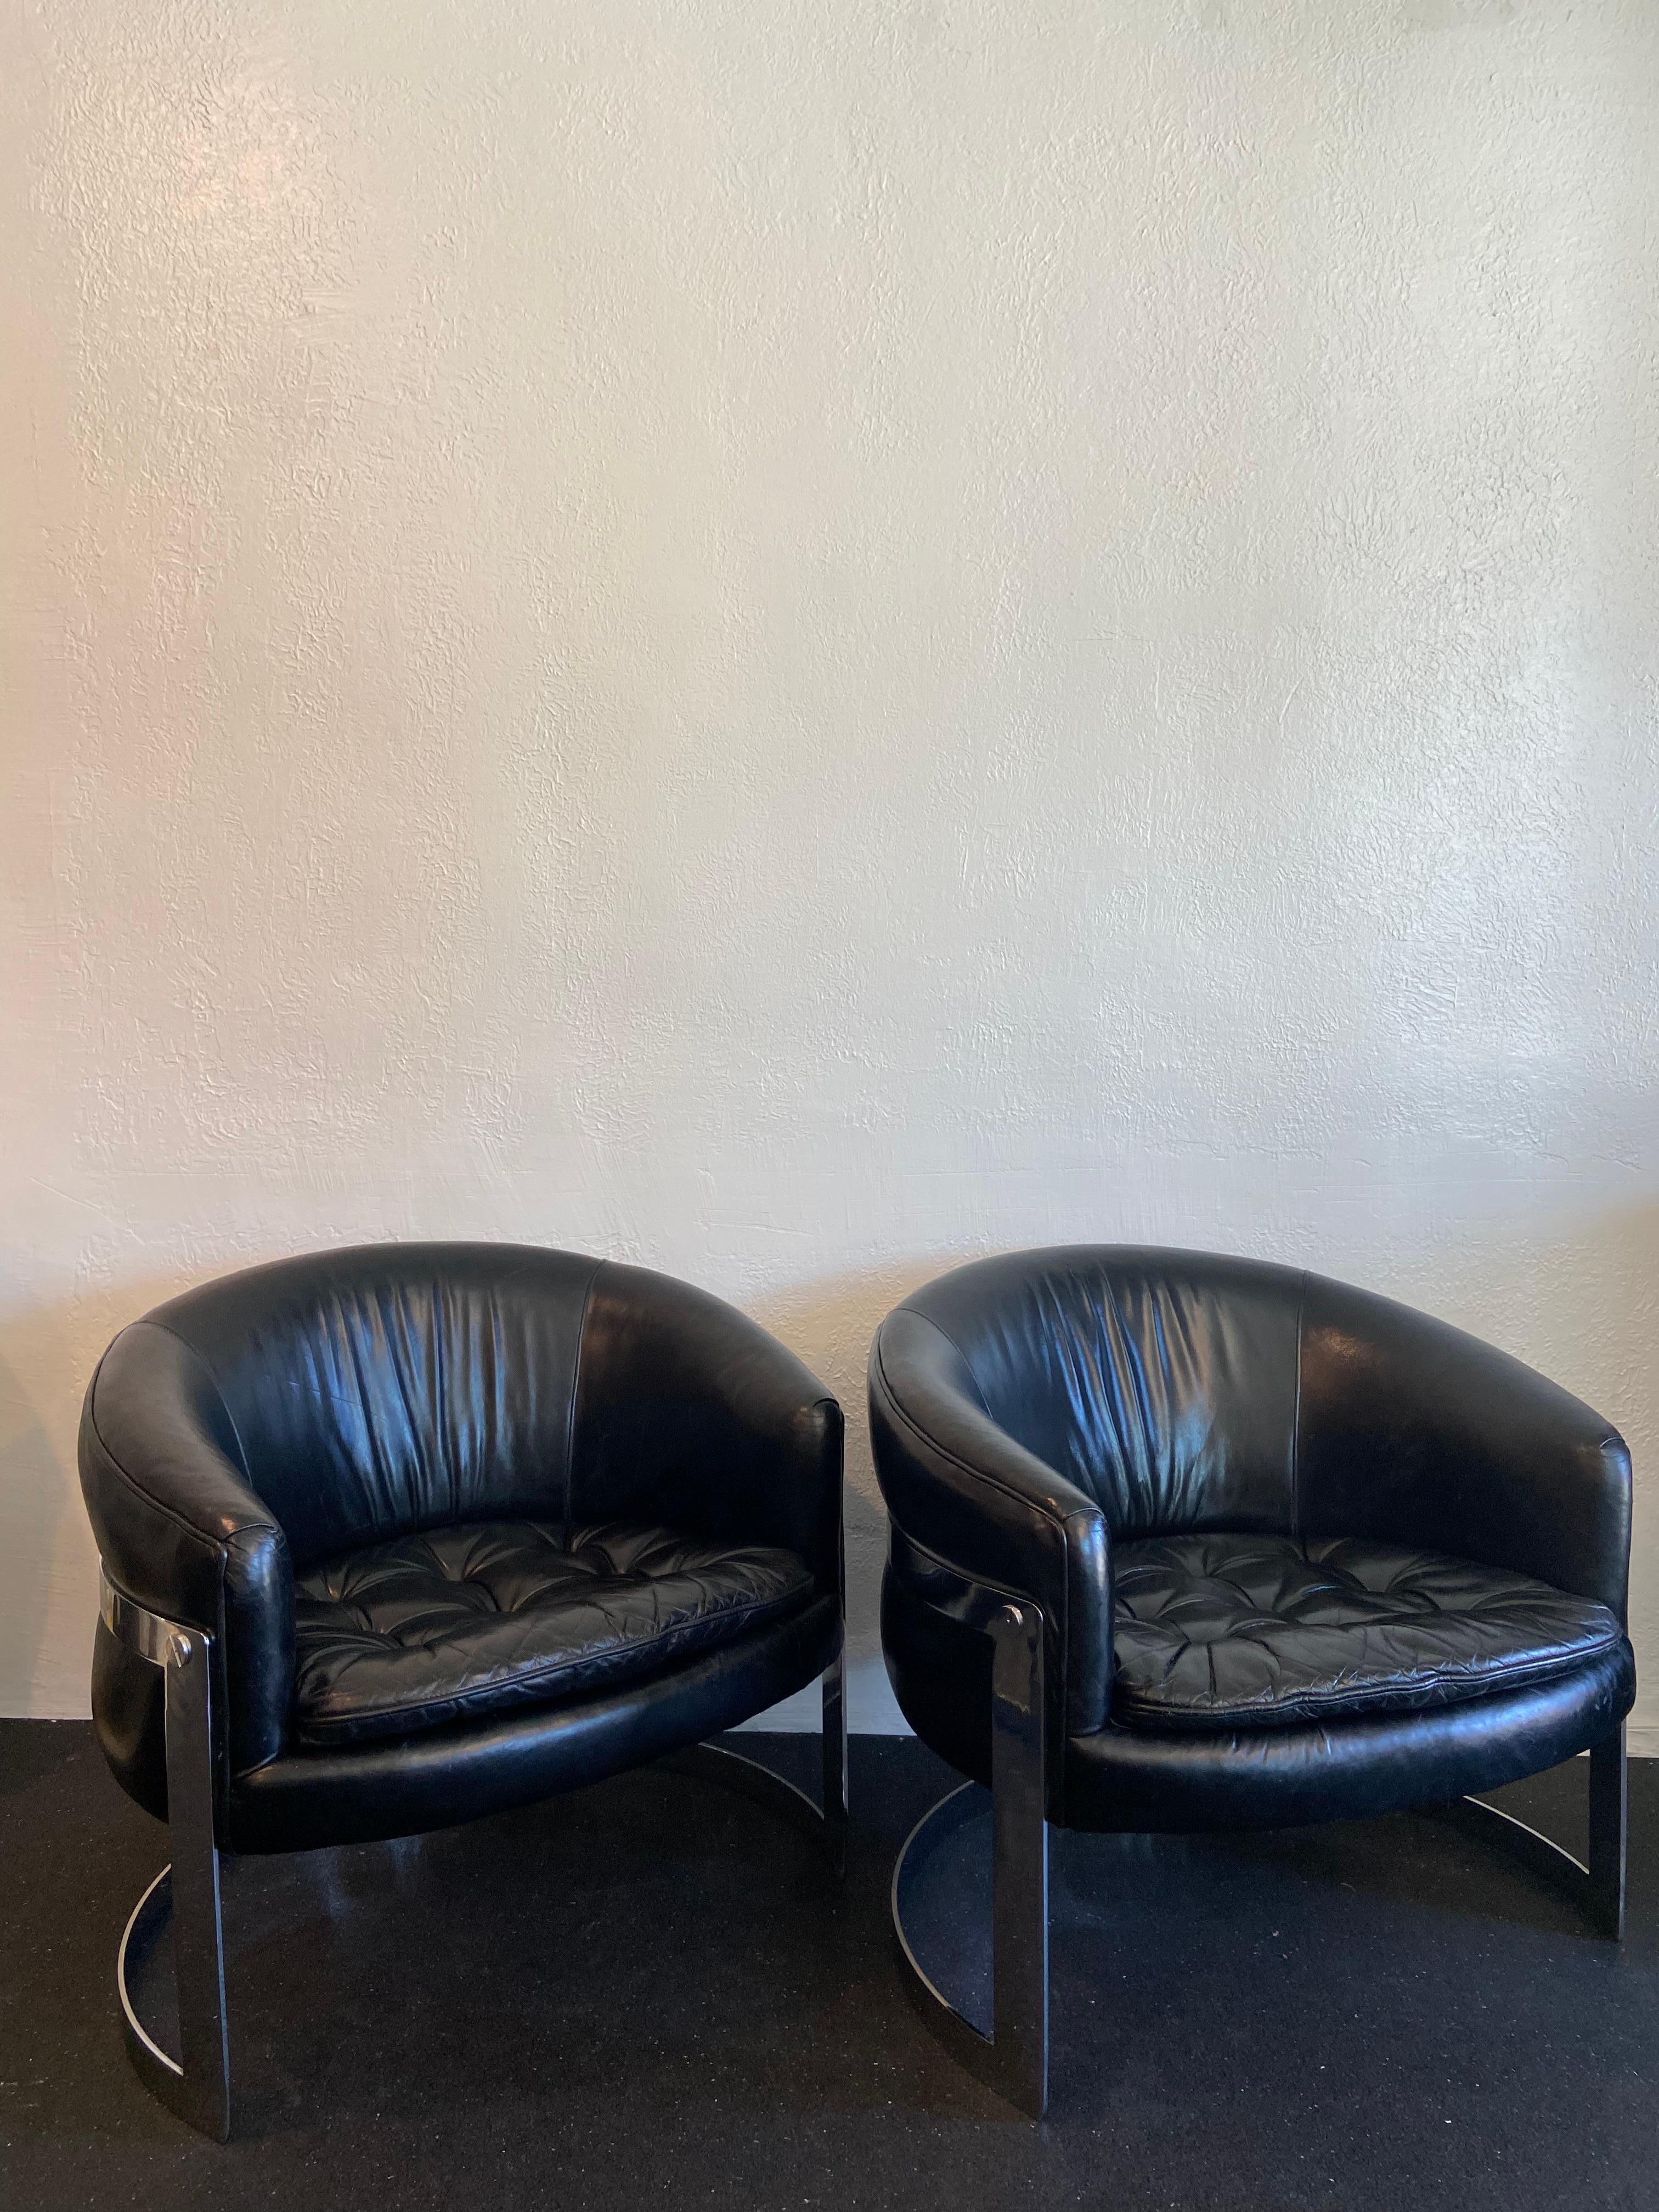 Zwei Flair Milo Baughman Style Chrom Freischwinger in schwarzem Leder. Die Stühle sind nicht mehr mit den ursprünglichen Etiketten versehen. Die Stühle sind mit der originalen Lederpolsterung ausgestattet, die im Laufe der Jahre schön patiniert ist